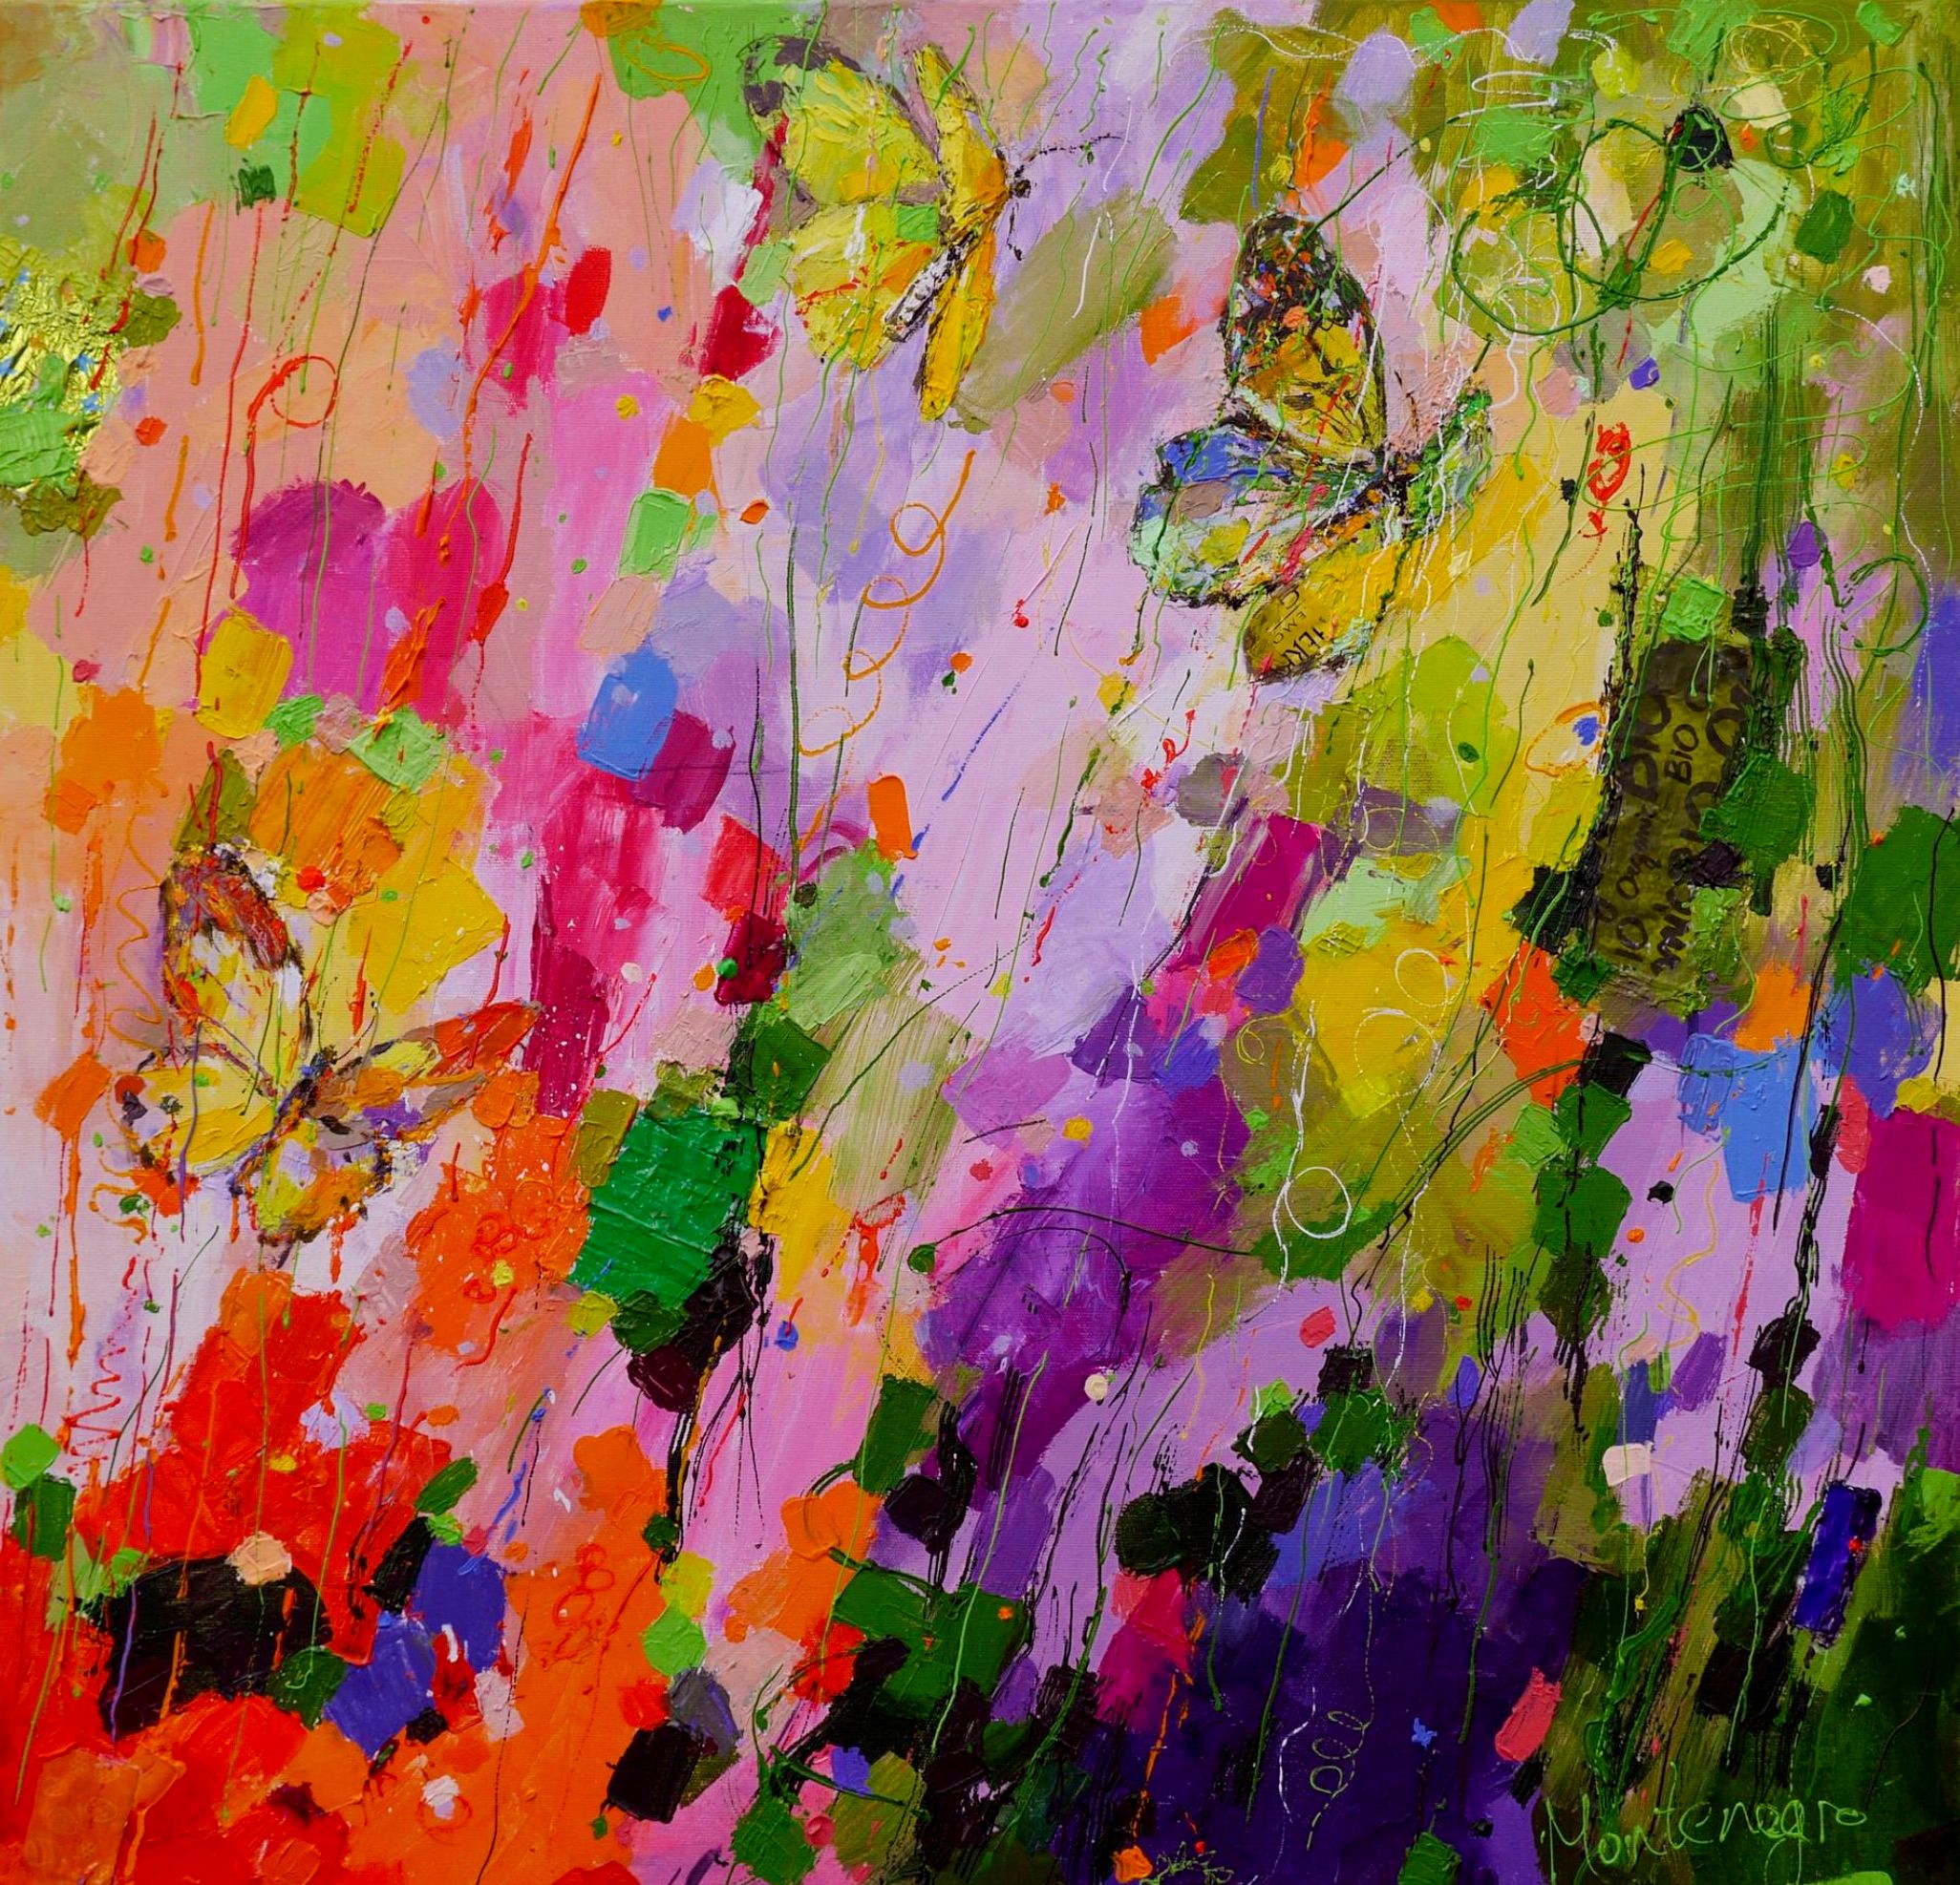 Miriam Montenegro pittura espressionista fiori e farfalle